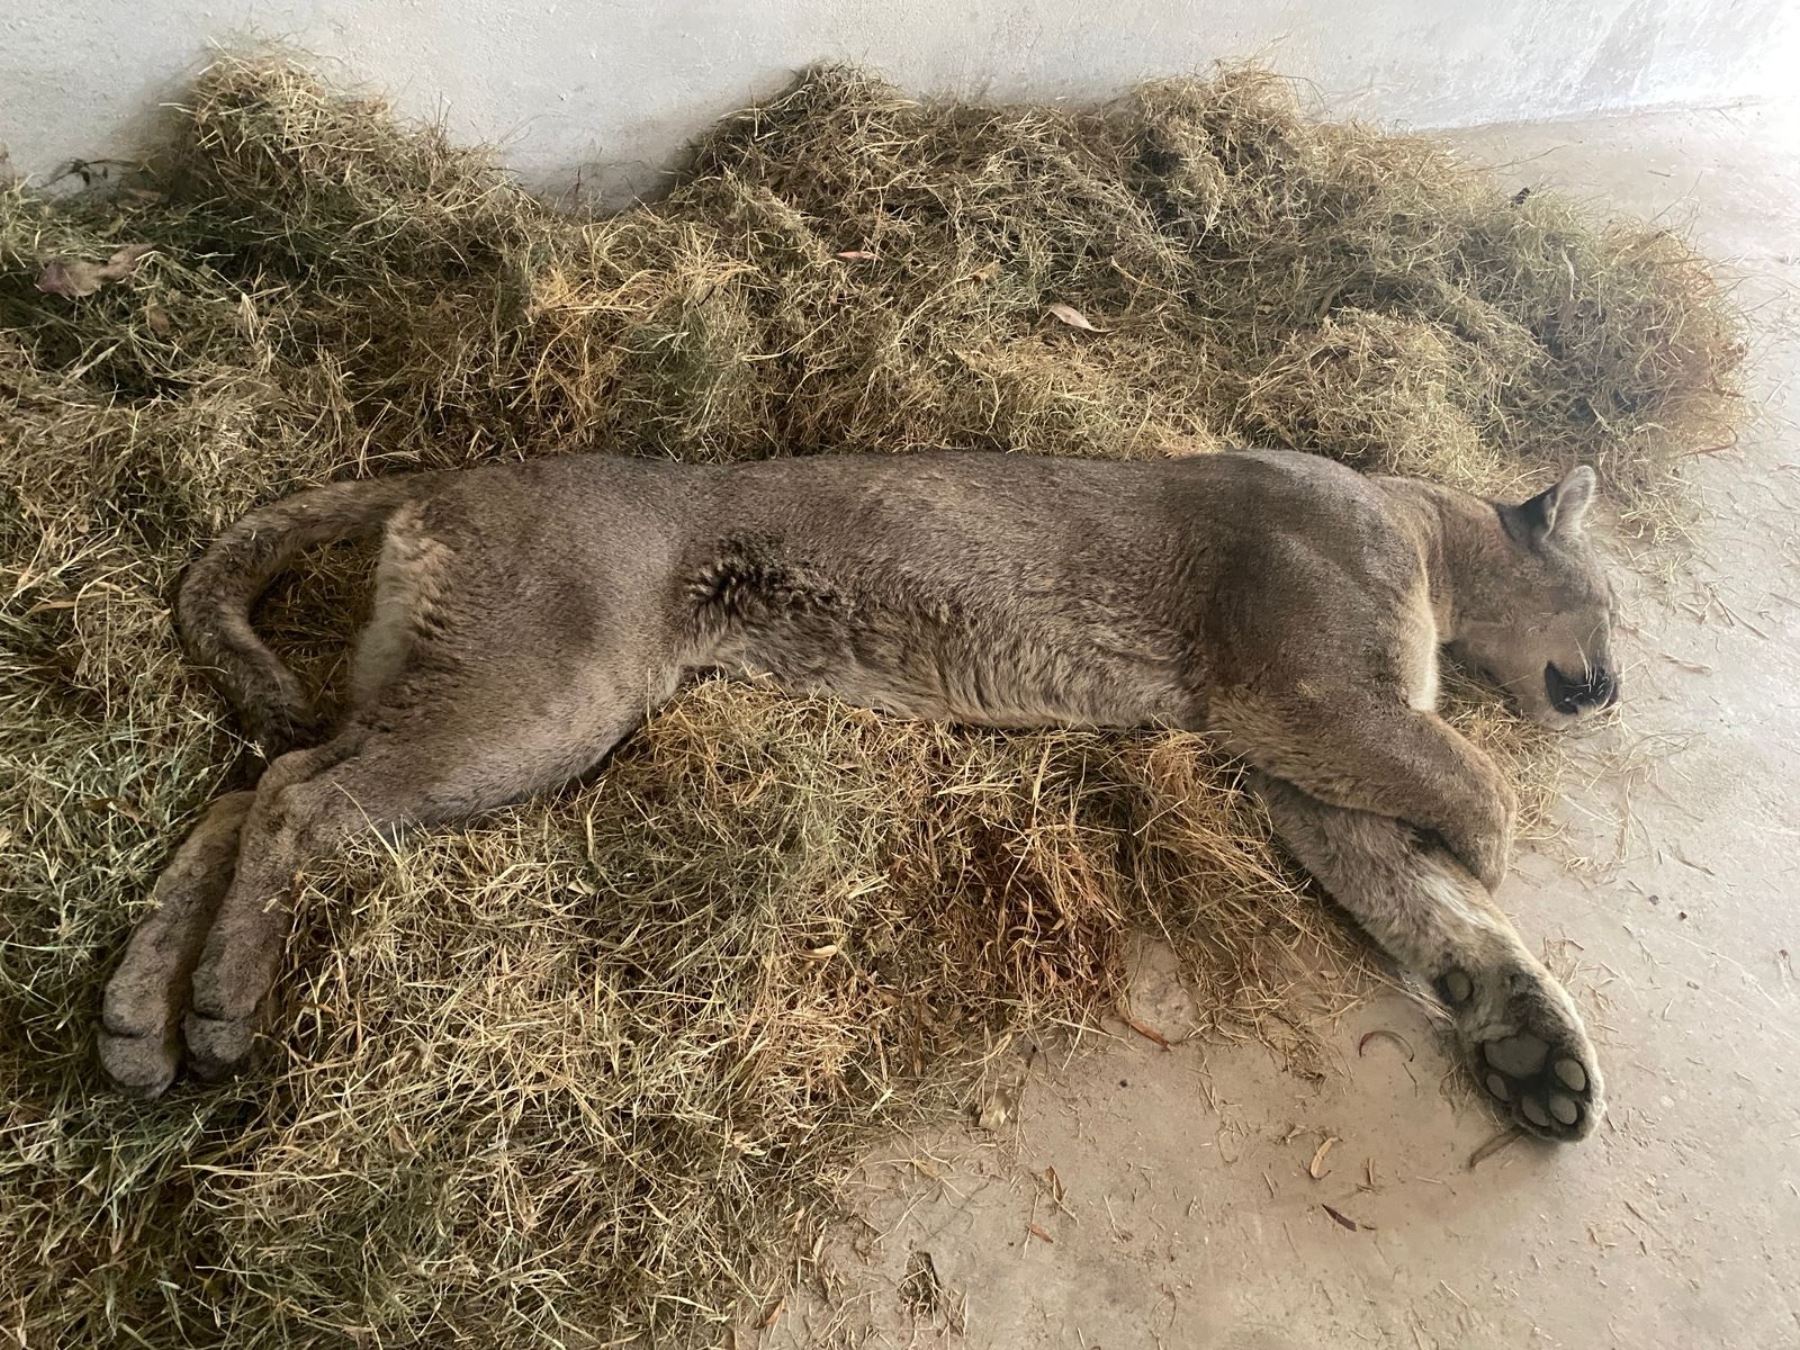 Personal del Serfor en Tacna logró sedar al puma antes de capturarlo. El felino generó alarma en la población tras ingresar a un inmueble en la zona urbana de la ciudad heroica. ANDINA/Difusión